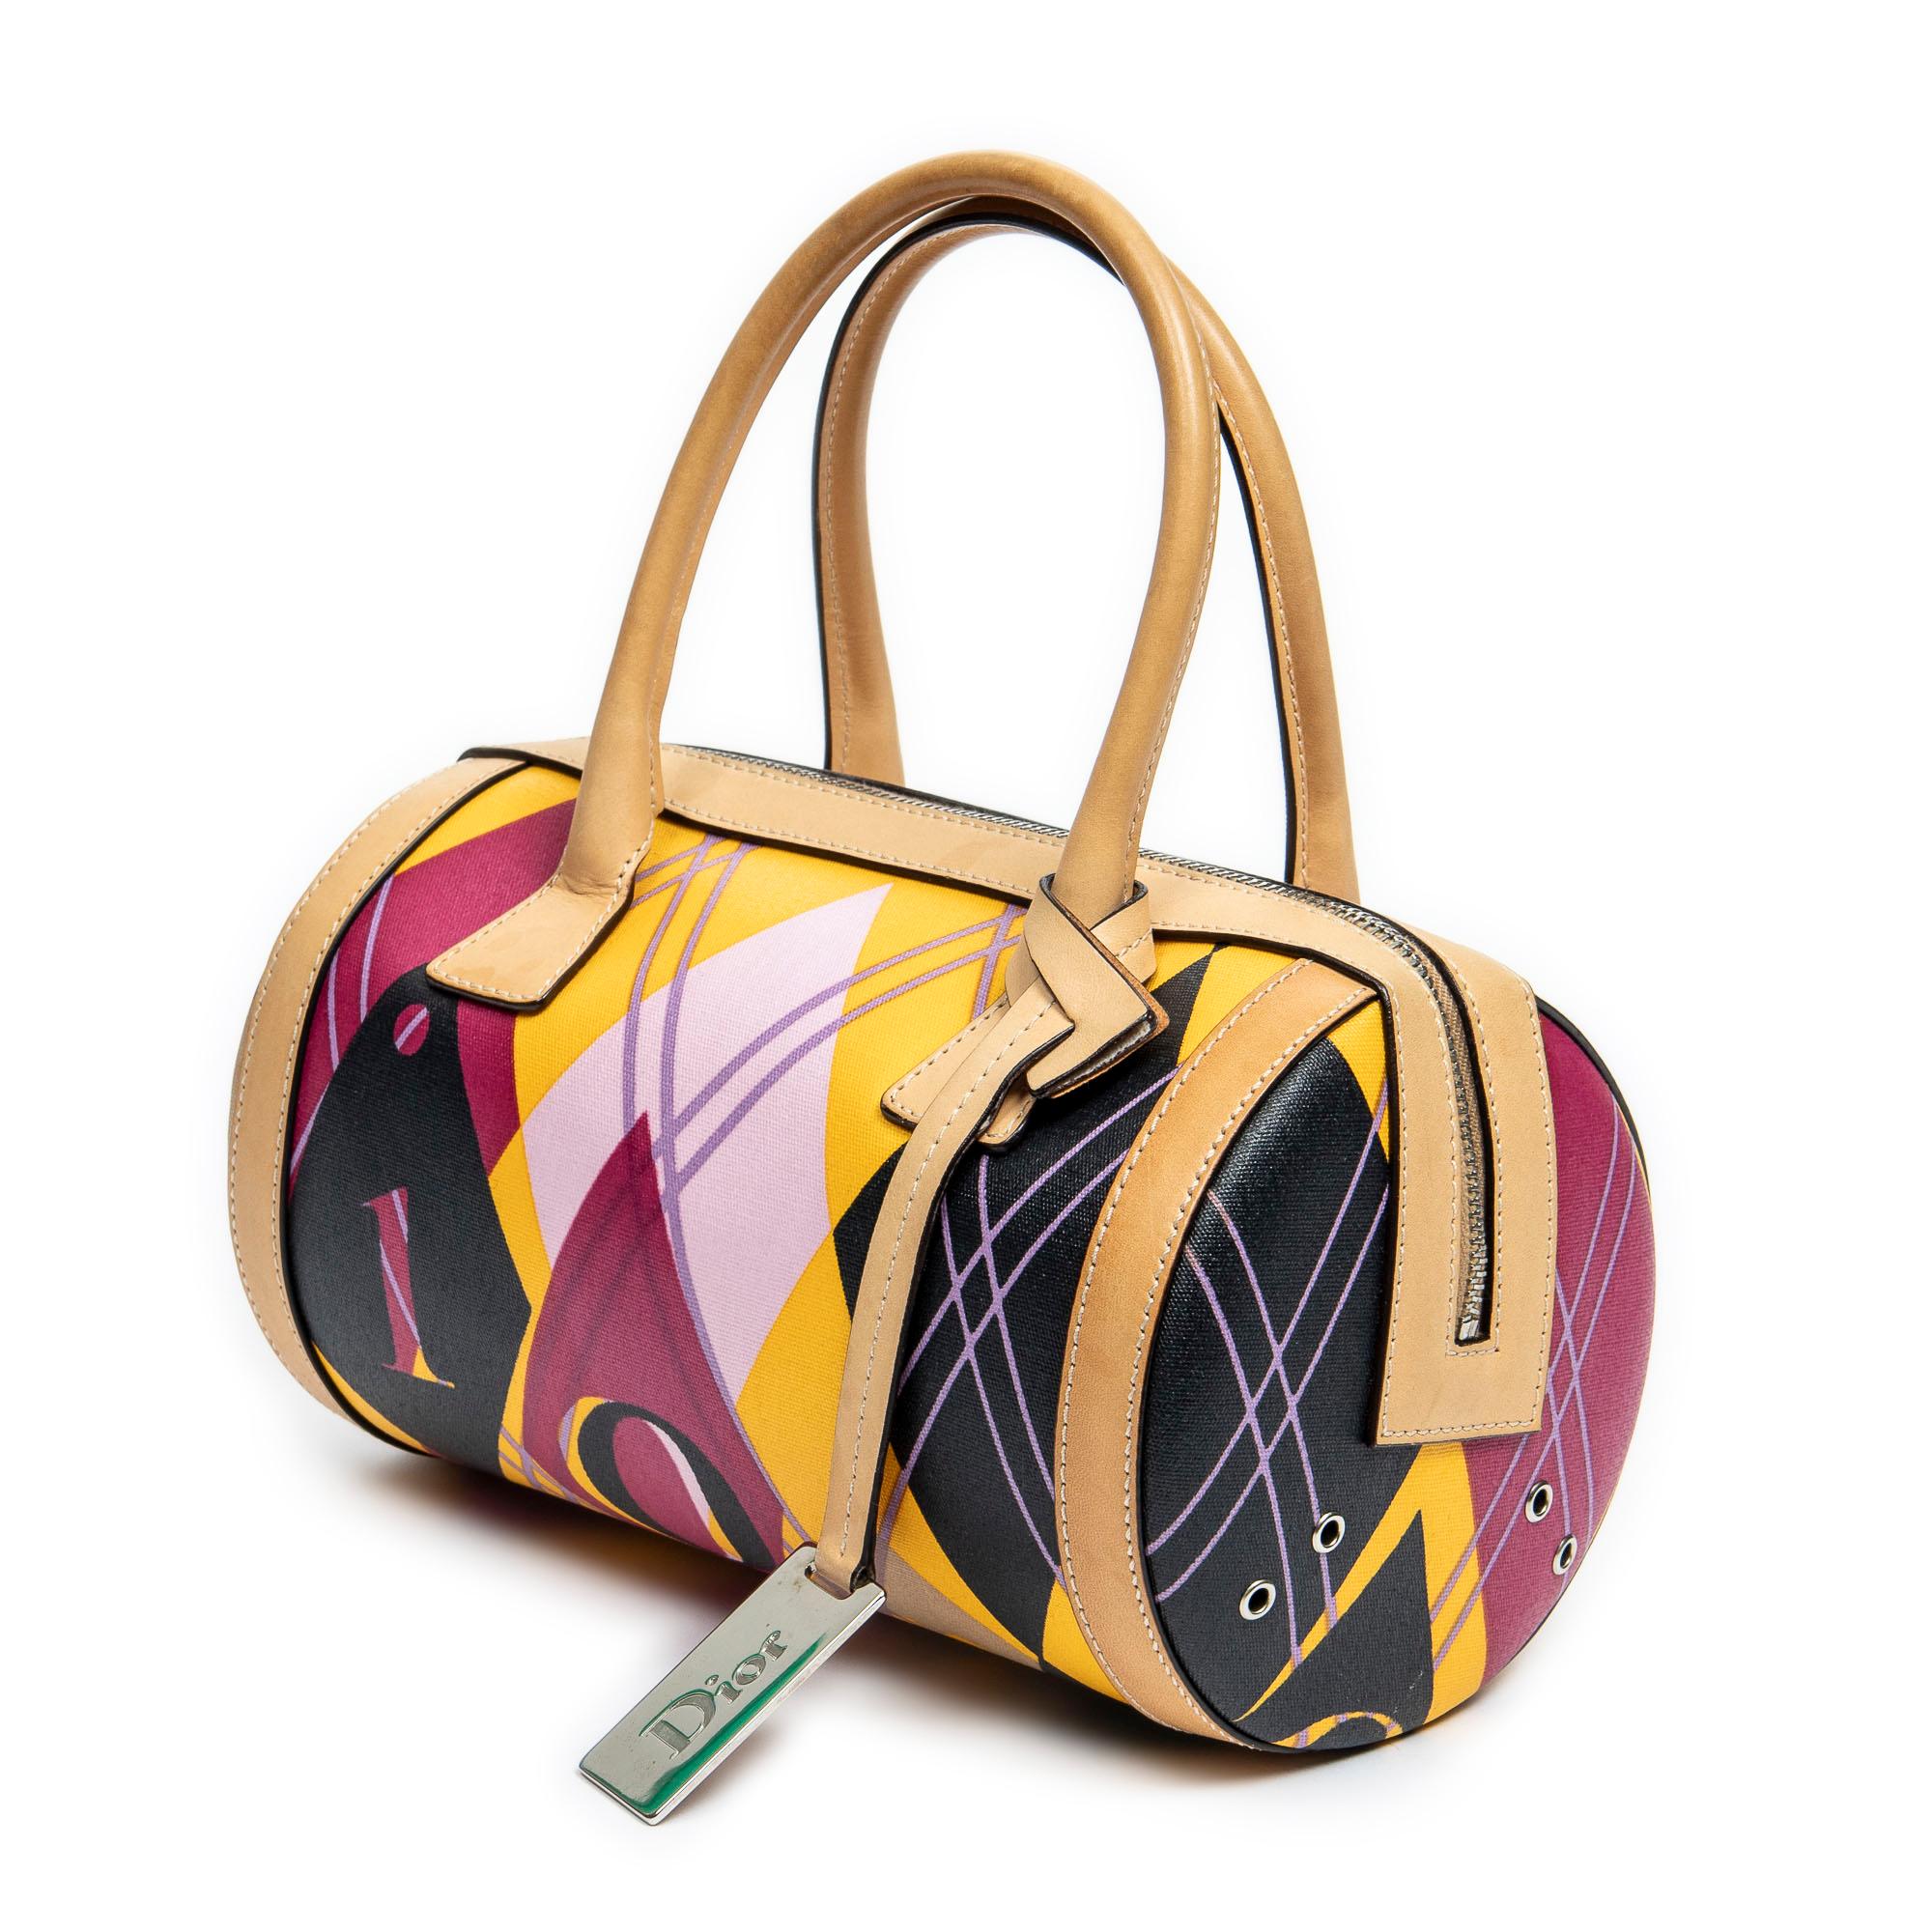 Voici le mini sac de golf Dior Beige/Pink/Black/Yellow : une fusion ludique de style et de sophistication. Confectionné en toile enduite à imprimé argyle dans une palette vibrante de beige, de rose, de noir et de jaune, ce sac exsude un charme